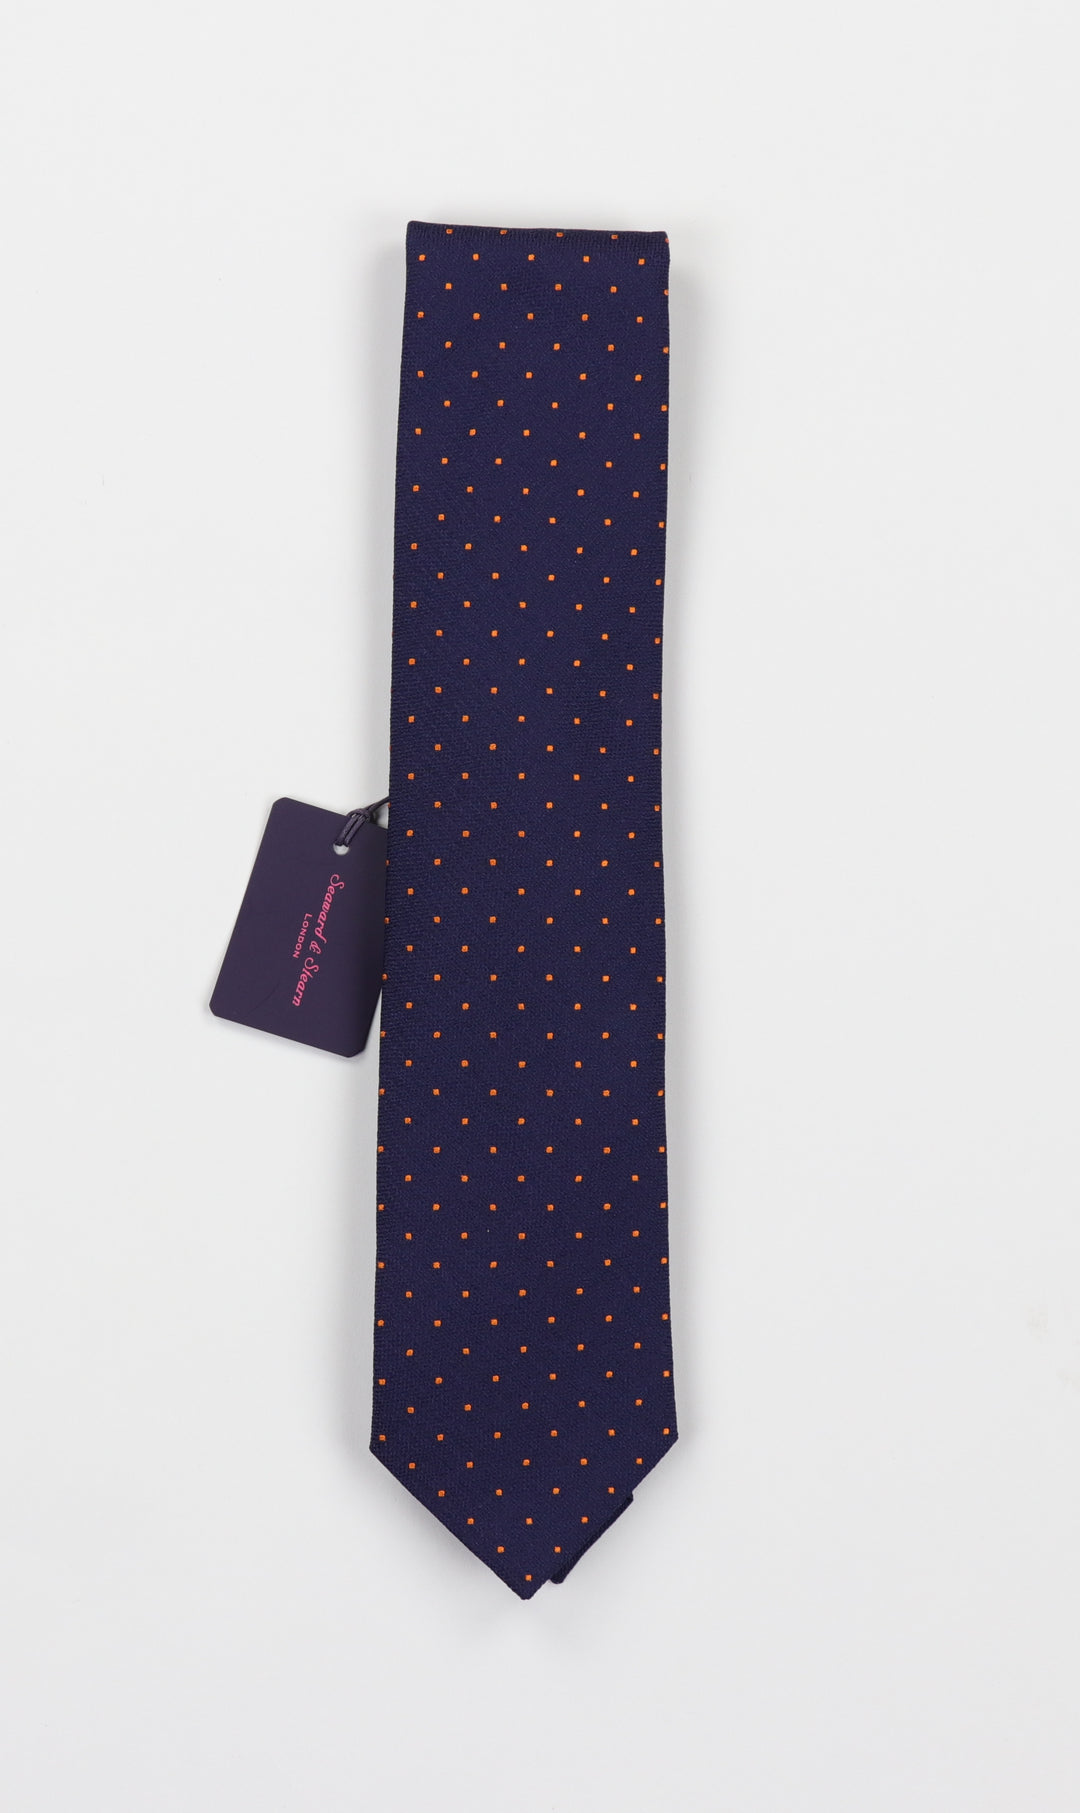 Seaward & Stearn Silk & Linen Necktie - Navy Dots